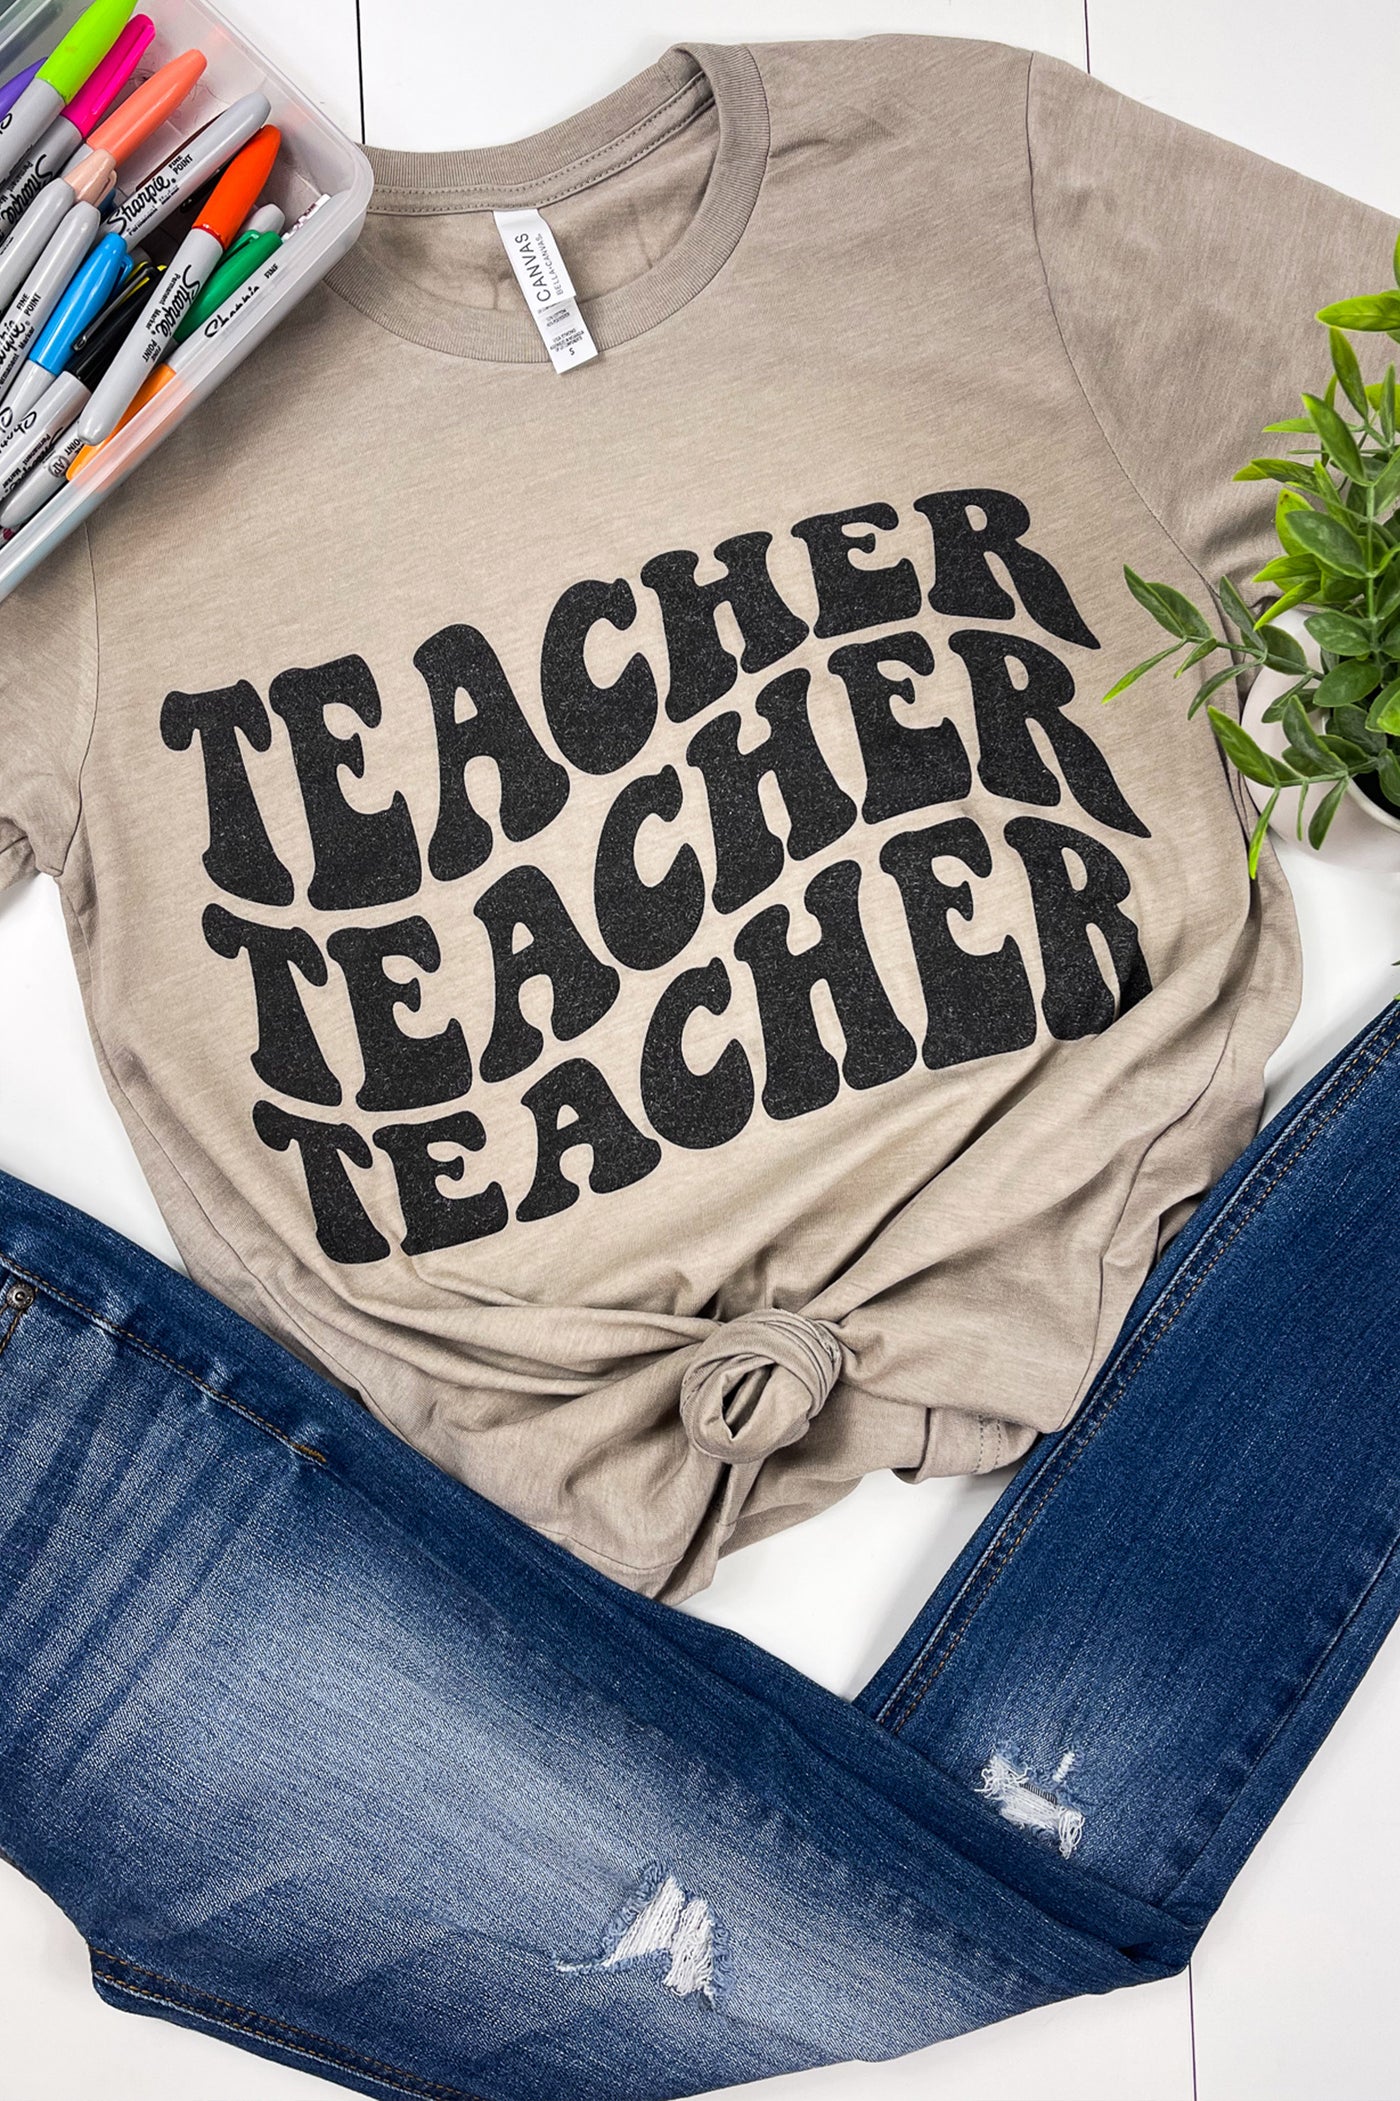 TEACHER TEACHER